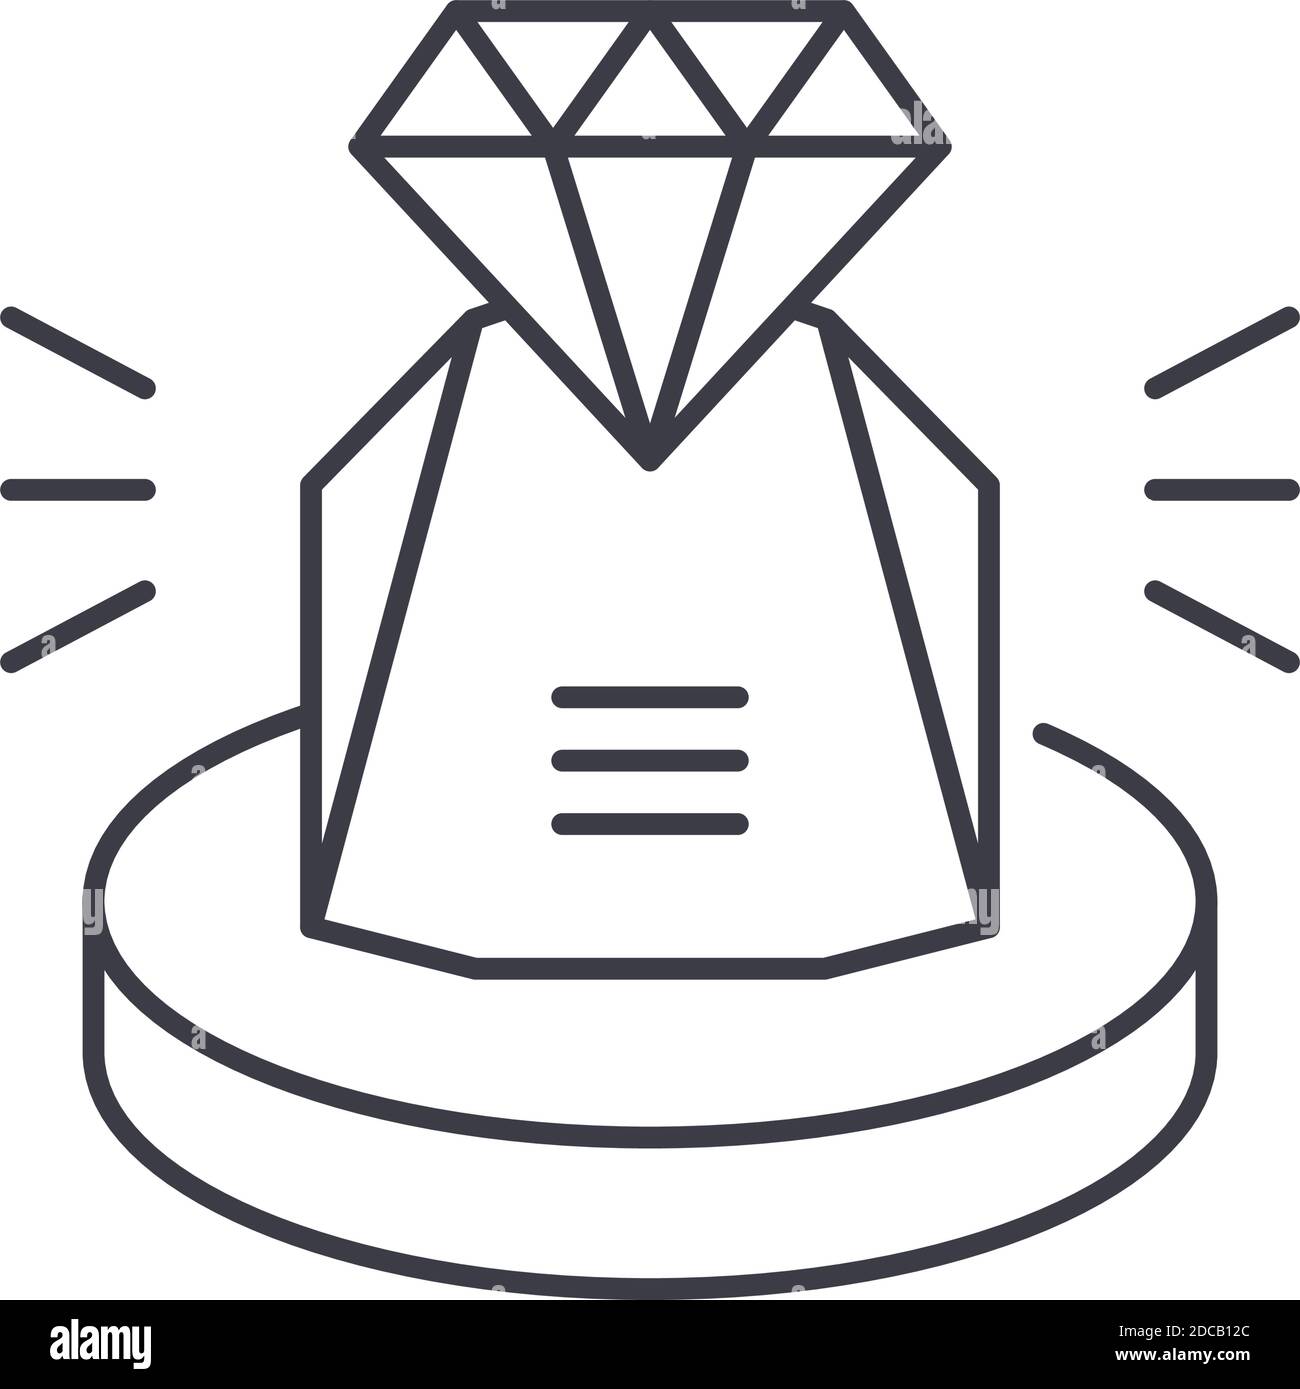 Icona a forma di diamante, illustrazione lineare isolata, vettore a linea sottile, segno di disegno web, simbolo del concetto di contorno con tratto modificabile su sfondo bianco. Illustrazione Vettoriale